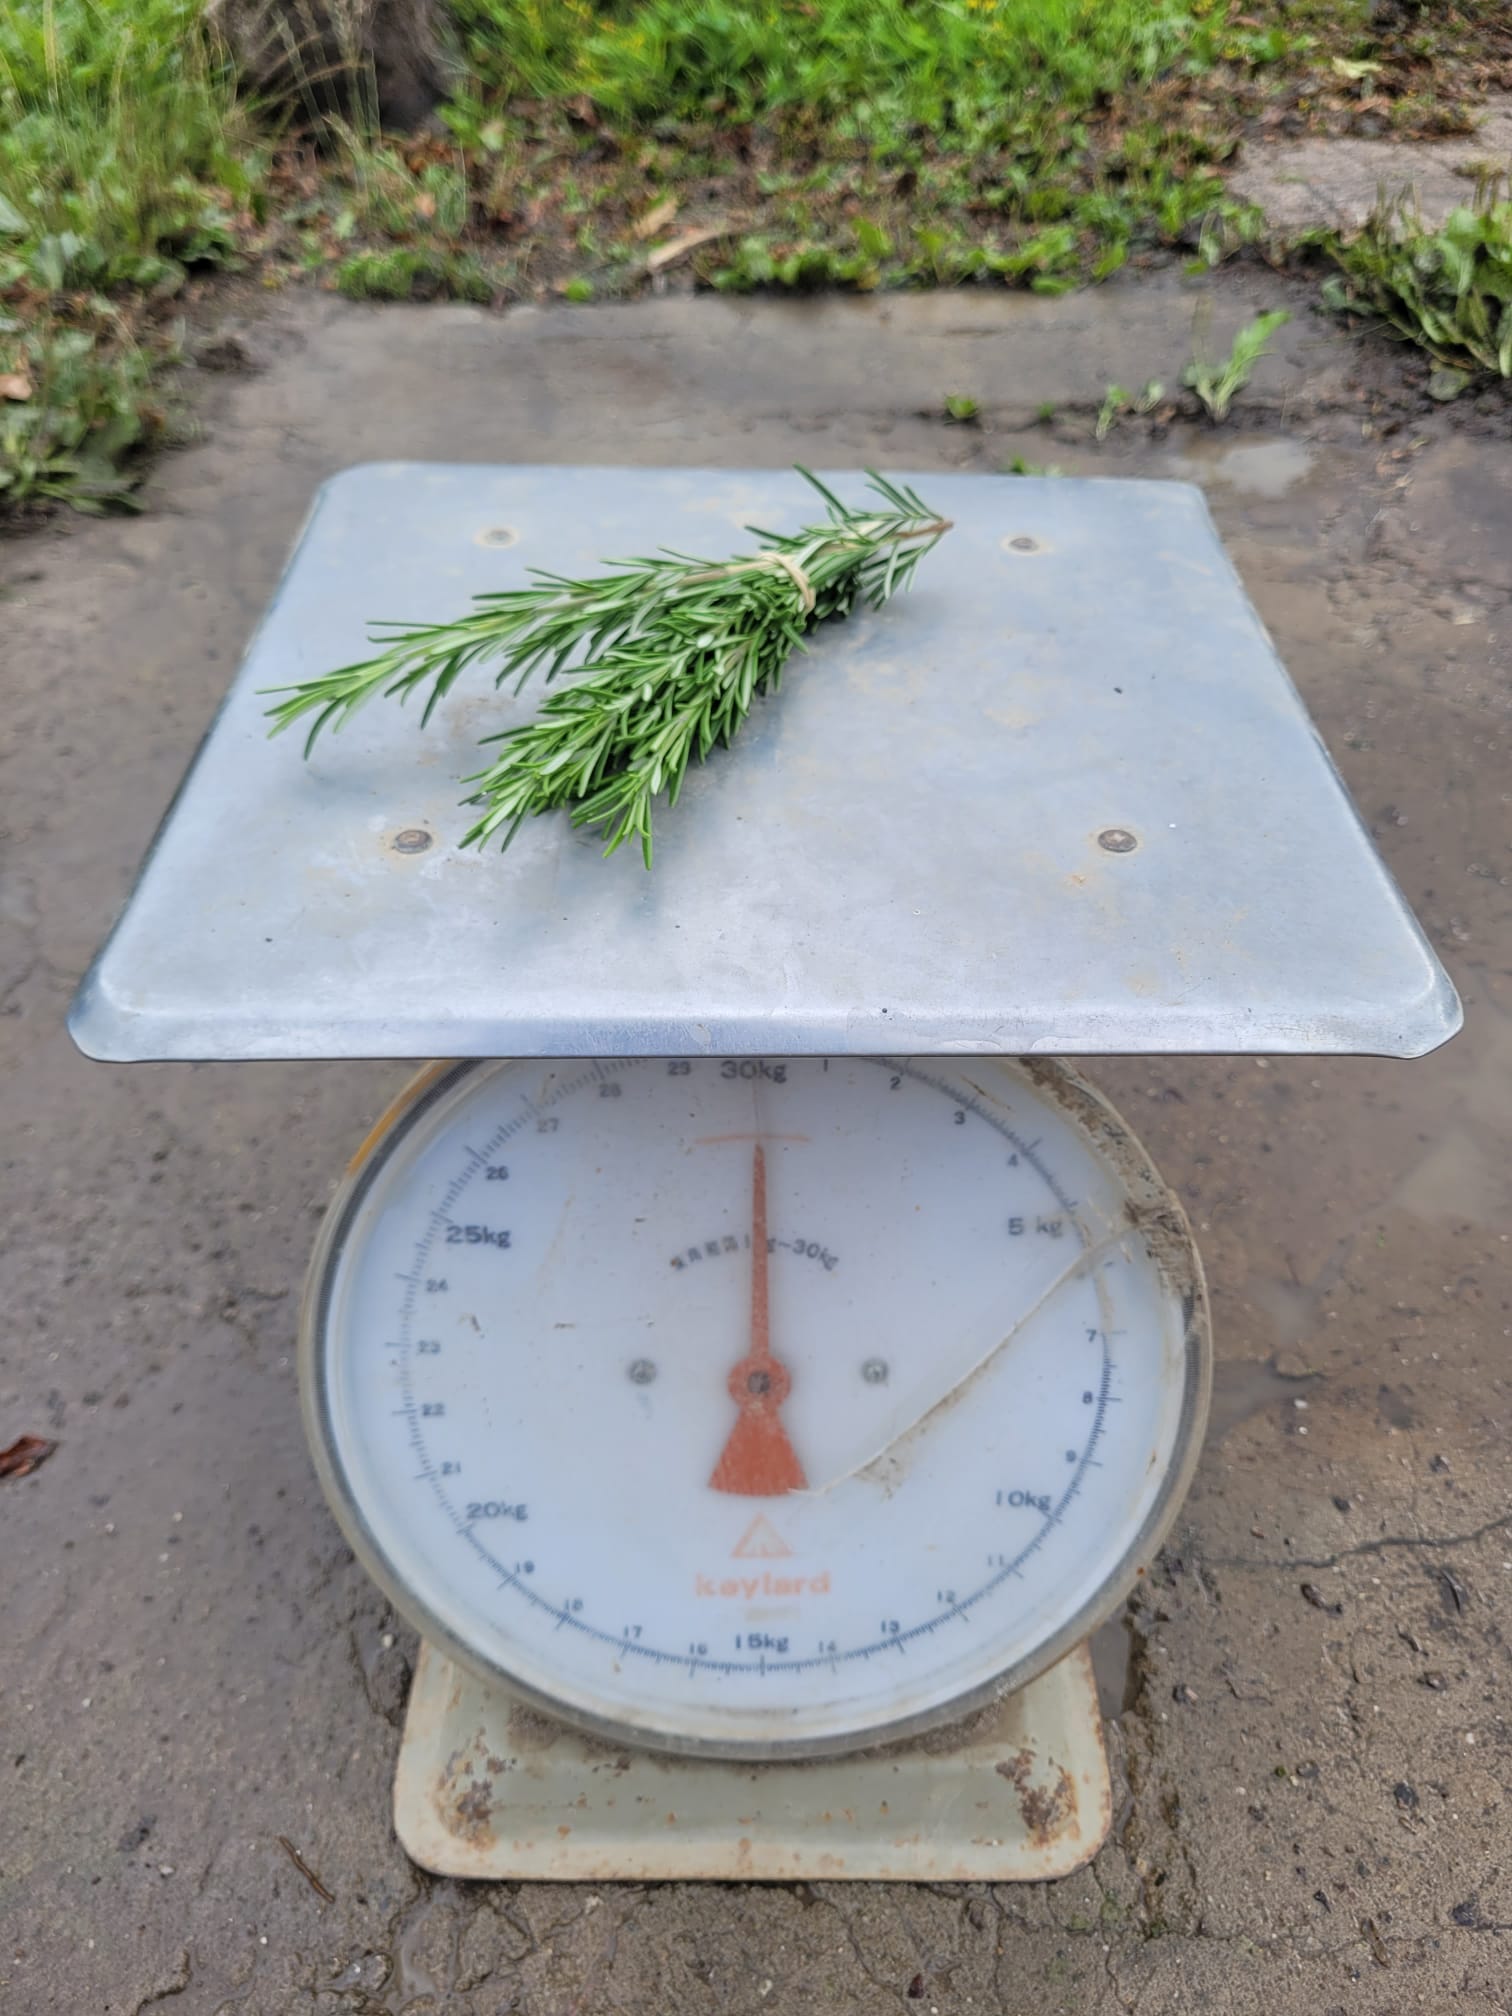 Bosje rozemarijn (30 gram)